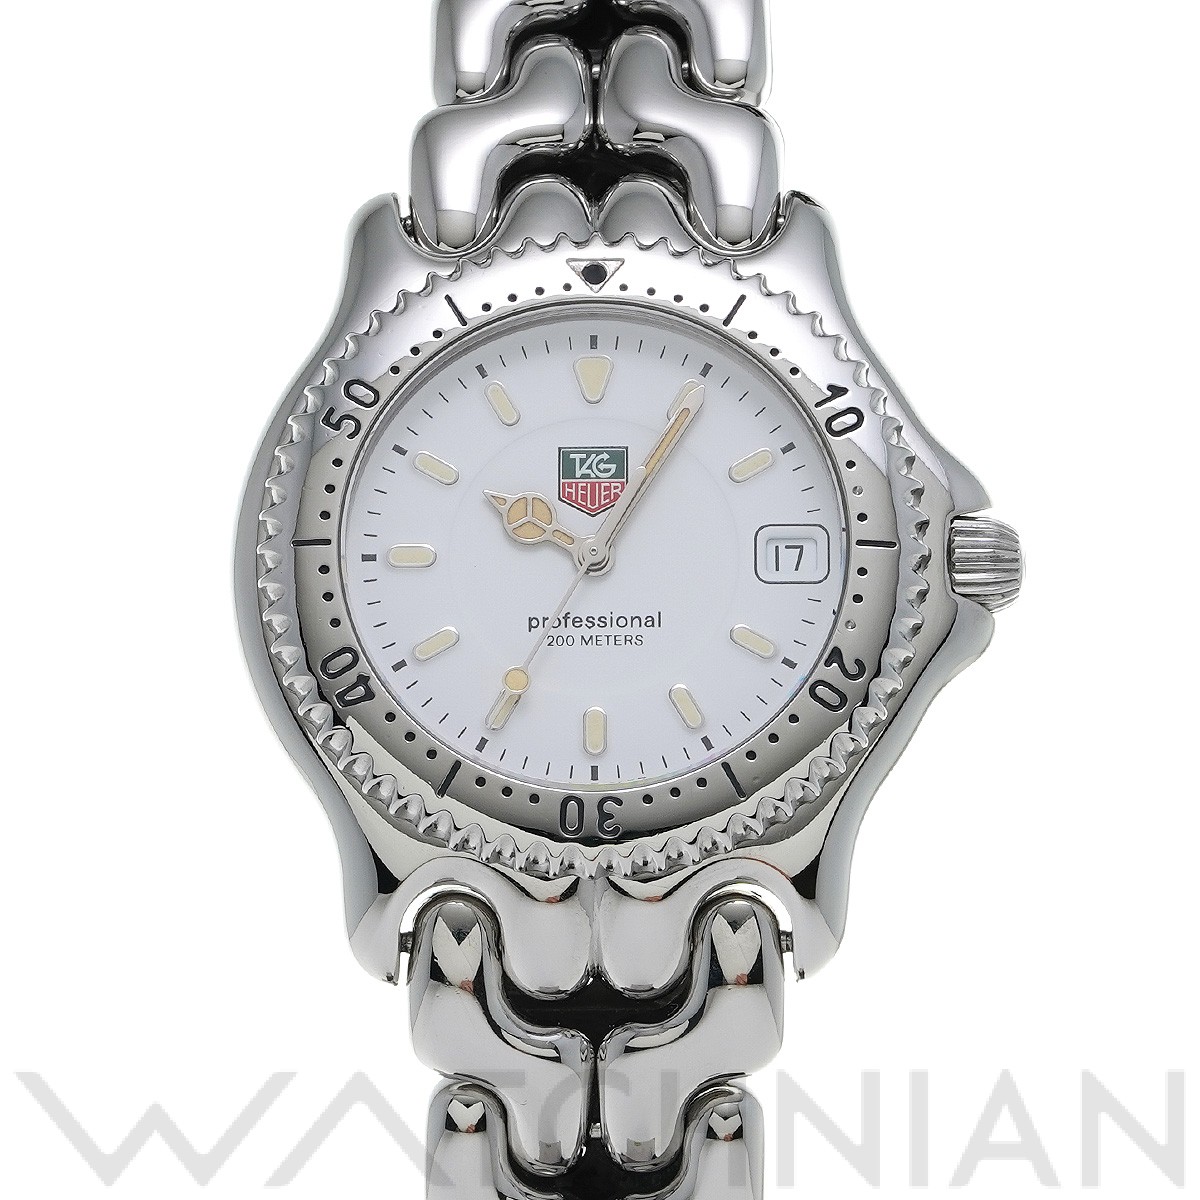 タグ ホイヤー / TAG HEUER セル プロフェッショナル 200 WG1110 ホワイト メンズ 時計 【中古】【wristwatch】